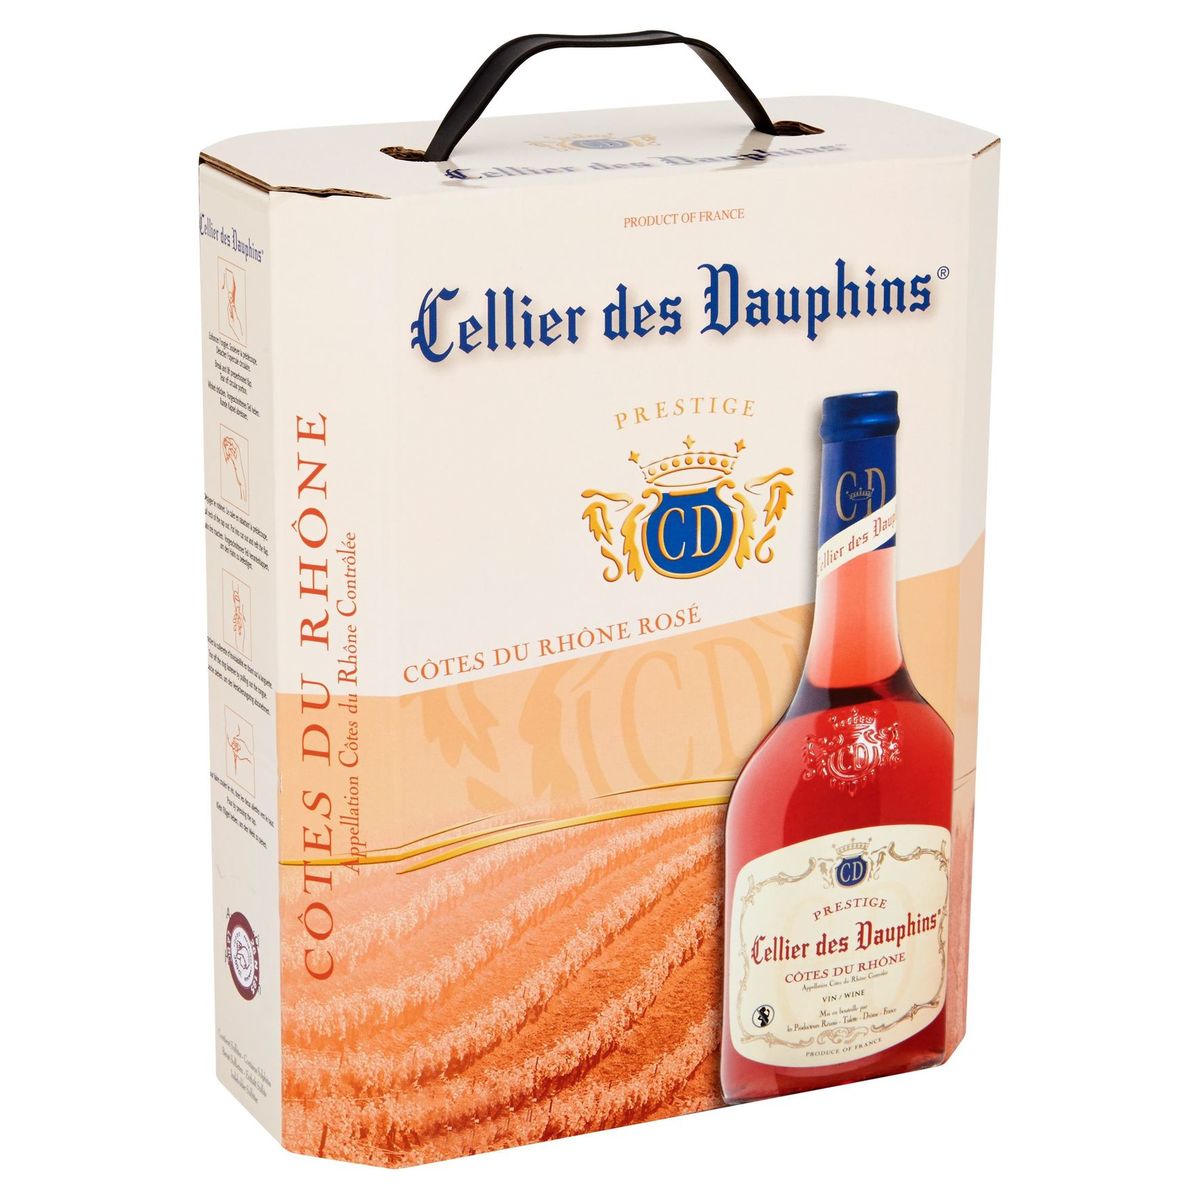 Cellier des Dauphins Prestige Côtes du Rhône Rosé 3 L